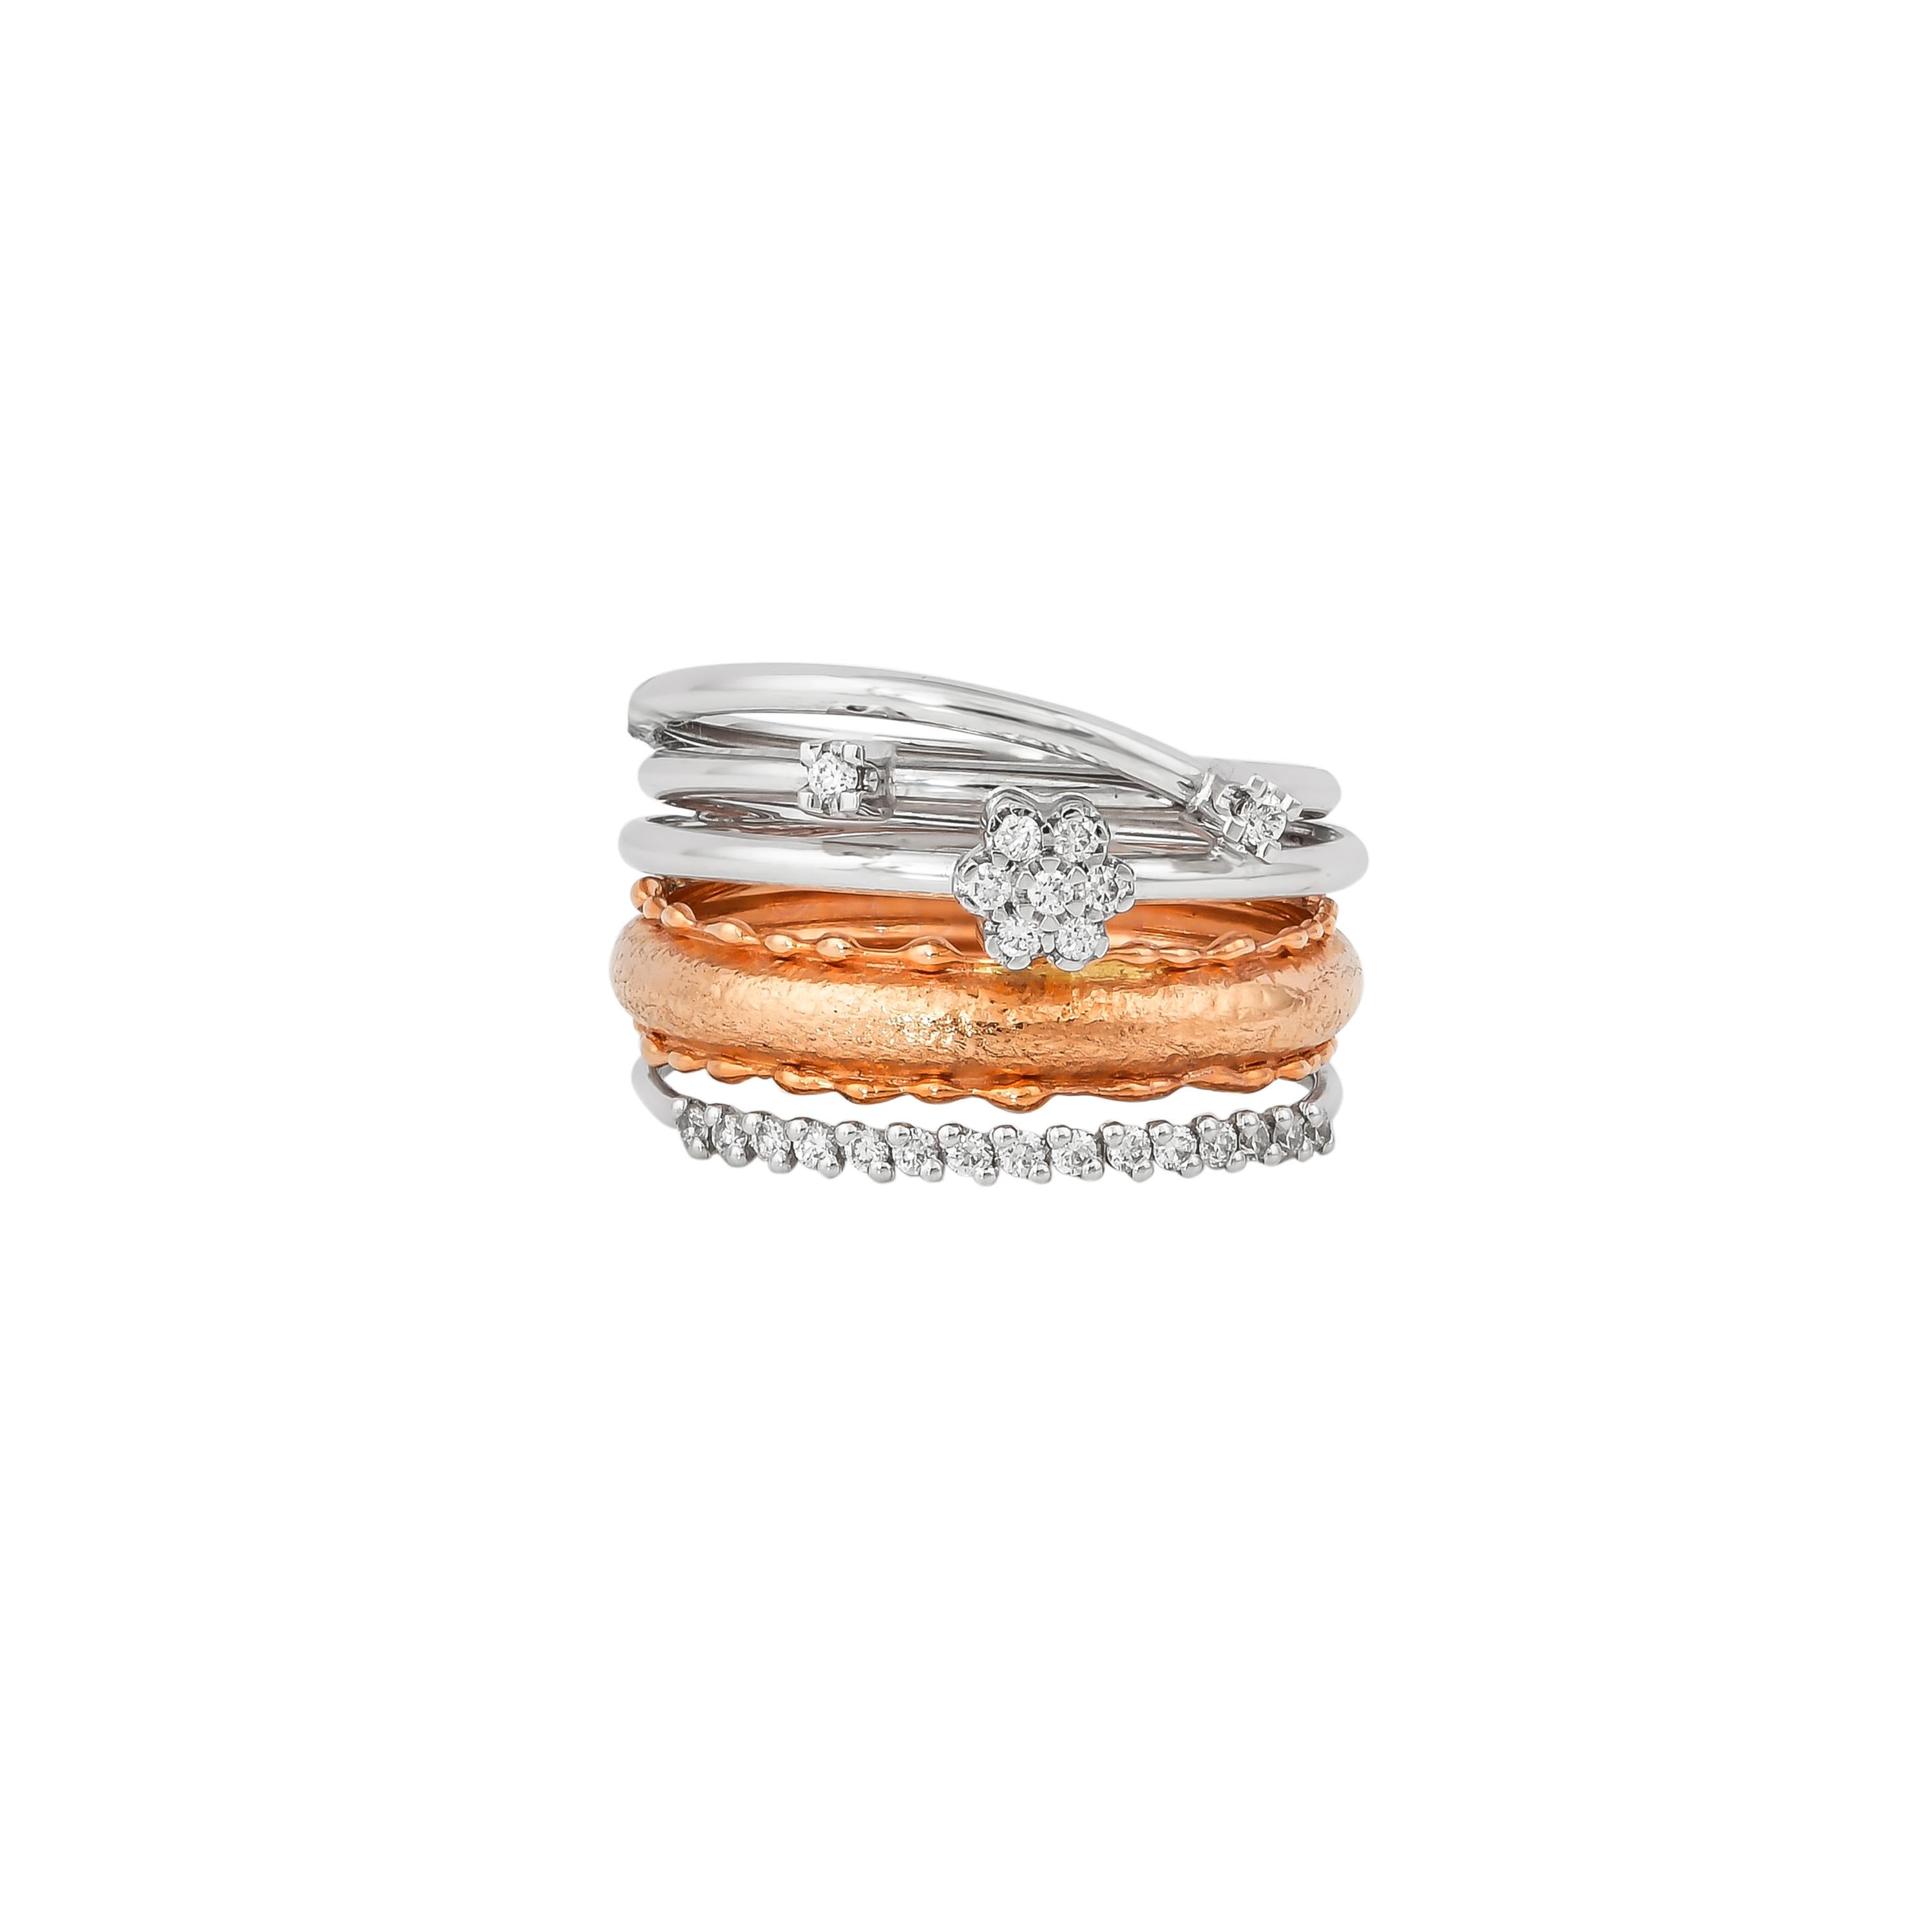 Round Cut 0.198 Carat Diamond Ring in 18 Karat White & Rose Gold For Sale